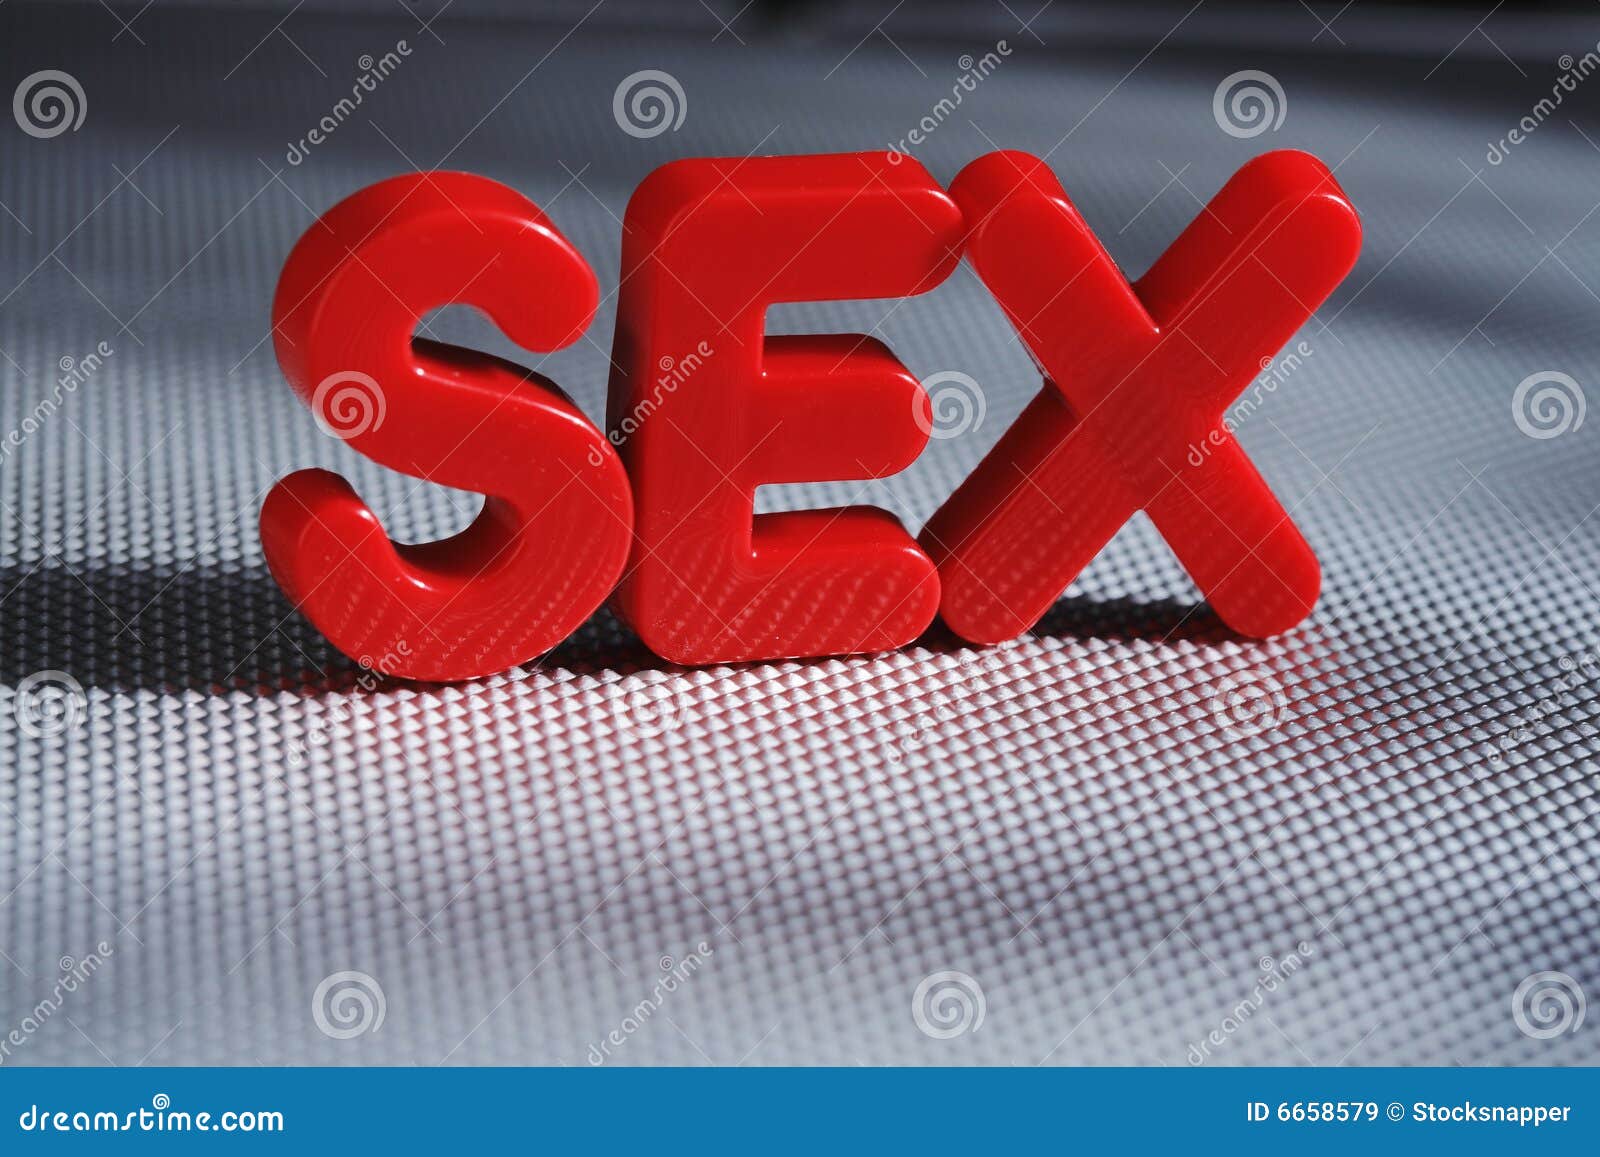 98,560 Fotos de Stock de Sex foto